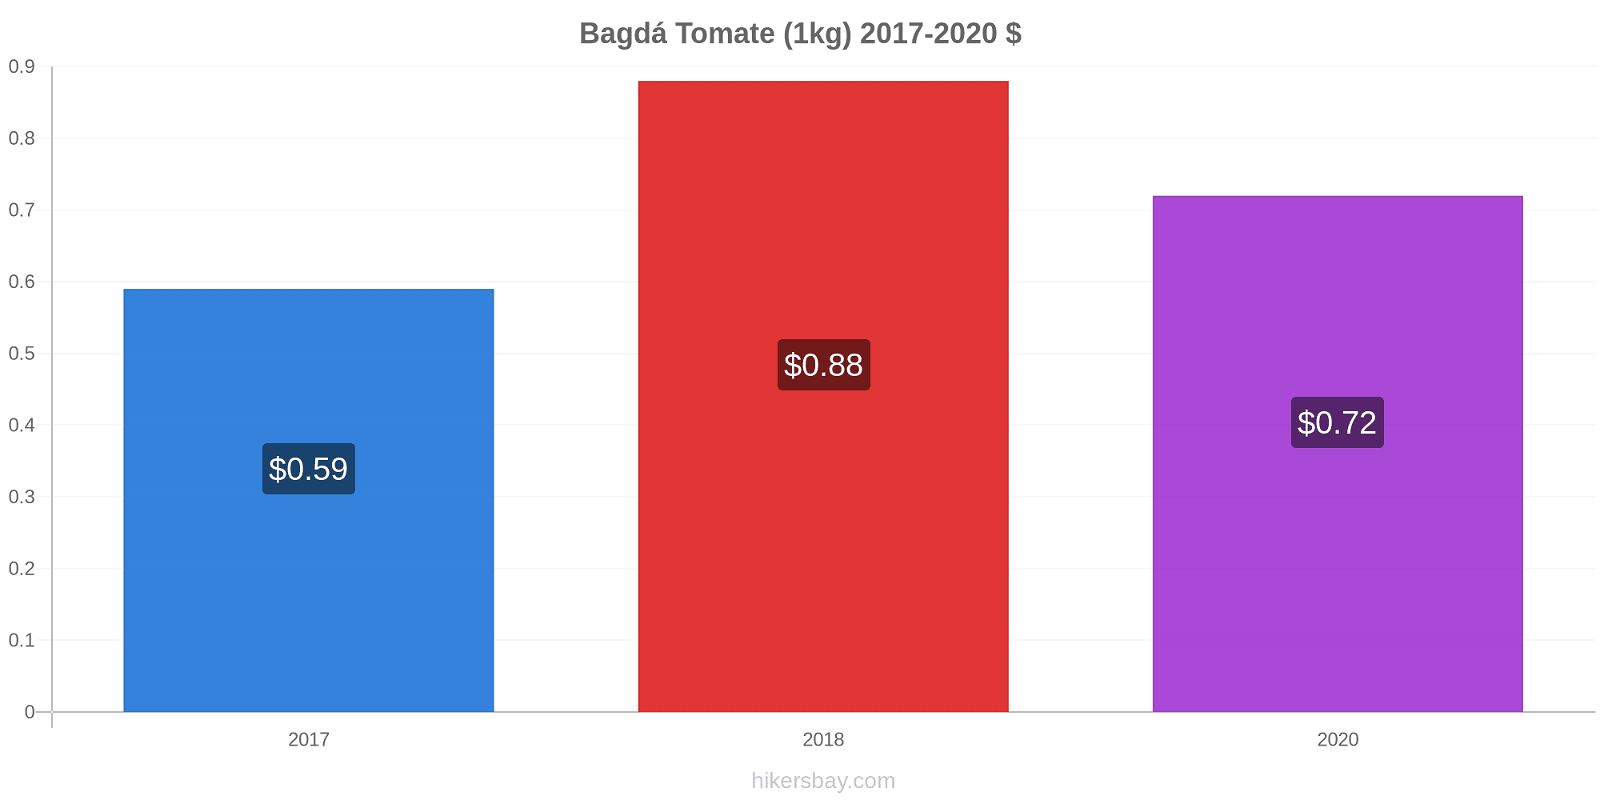 Bagdá variação de preço Tomate (1kg) hikersbay.com